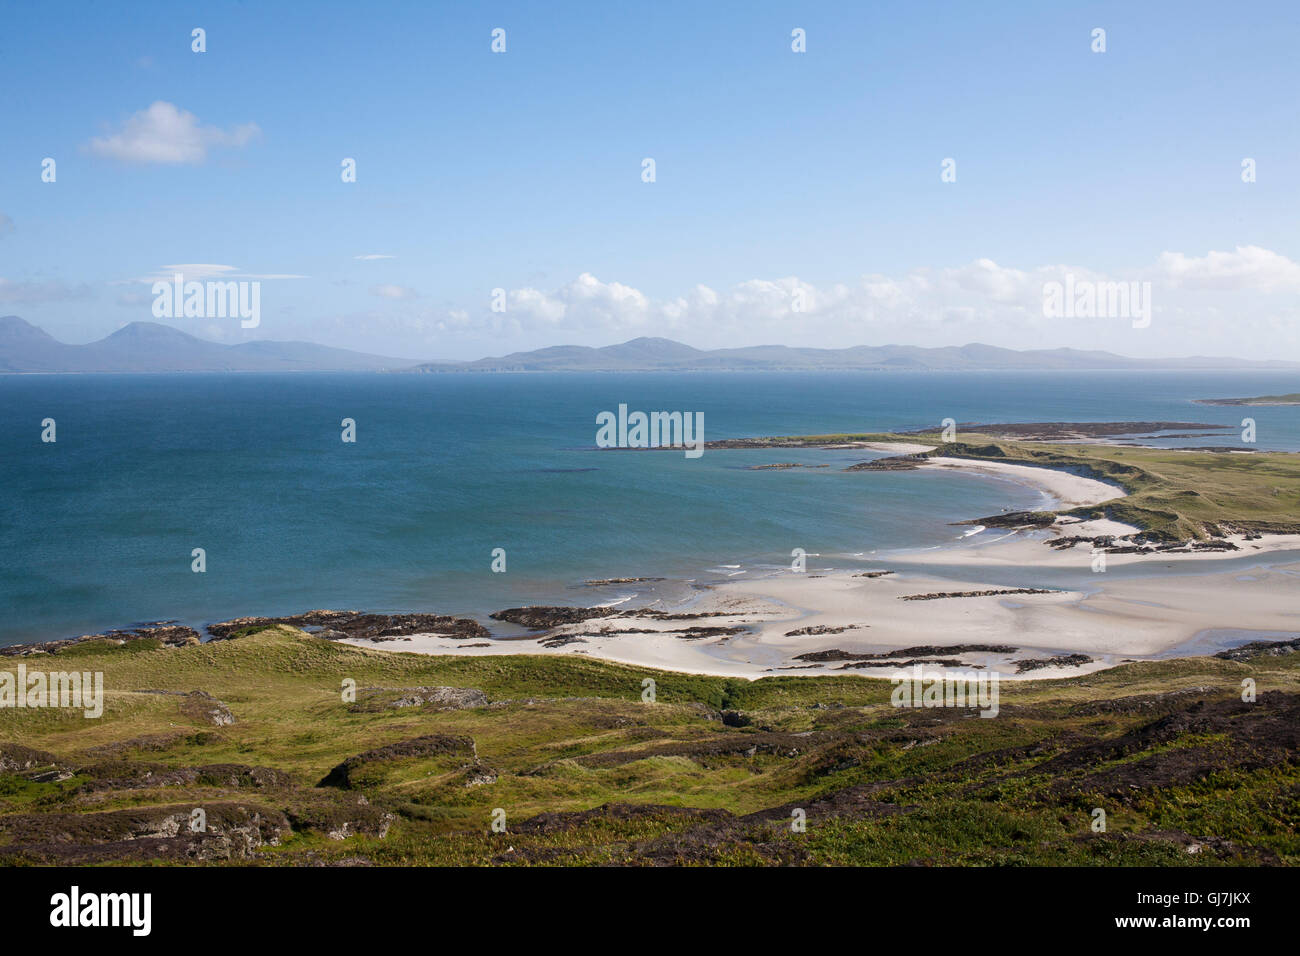 L'interdiction sur les plages Rubha Colonsay et Oransay dans les Hébrides intérieures, de l'Écosse. Jura et Islay peut être vu dans la distance. Banque D'Images